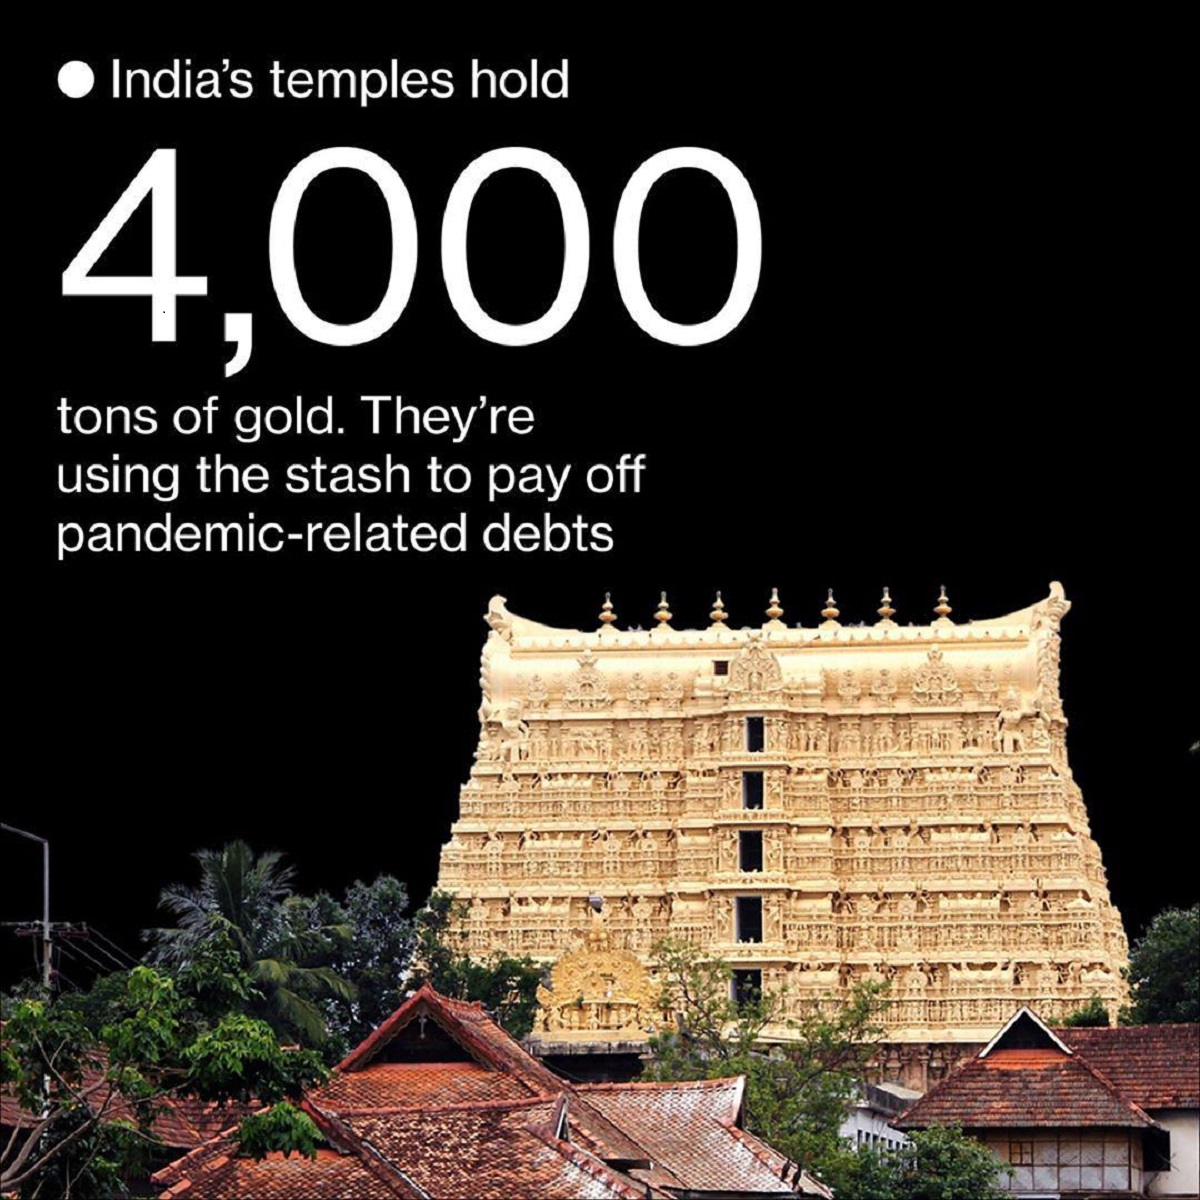 چهار هزار تن طلا در اختیار معابد هند!/ فروش طلاهای اهدایی برای پرداخت مخارج ۶.۸میلیون دلاری